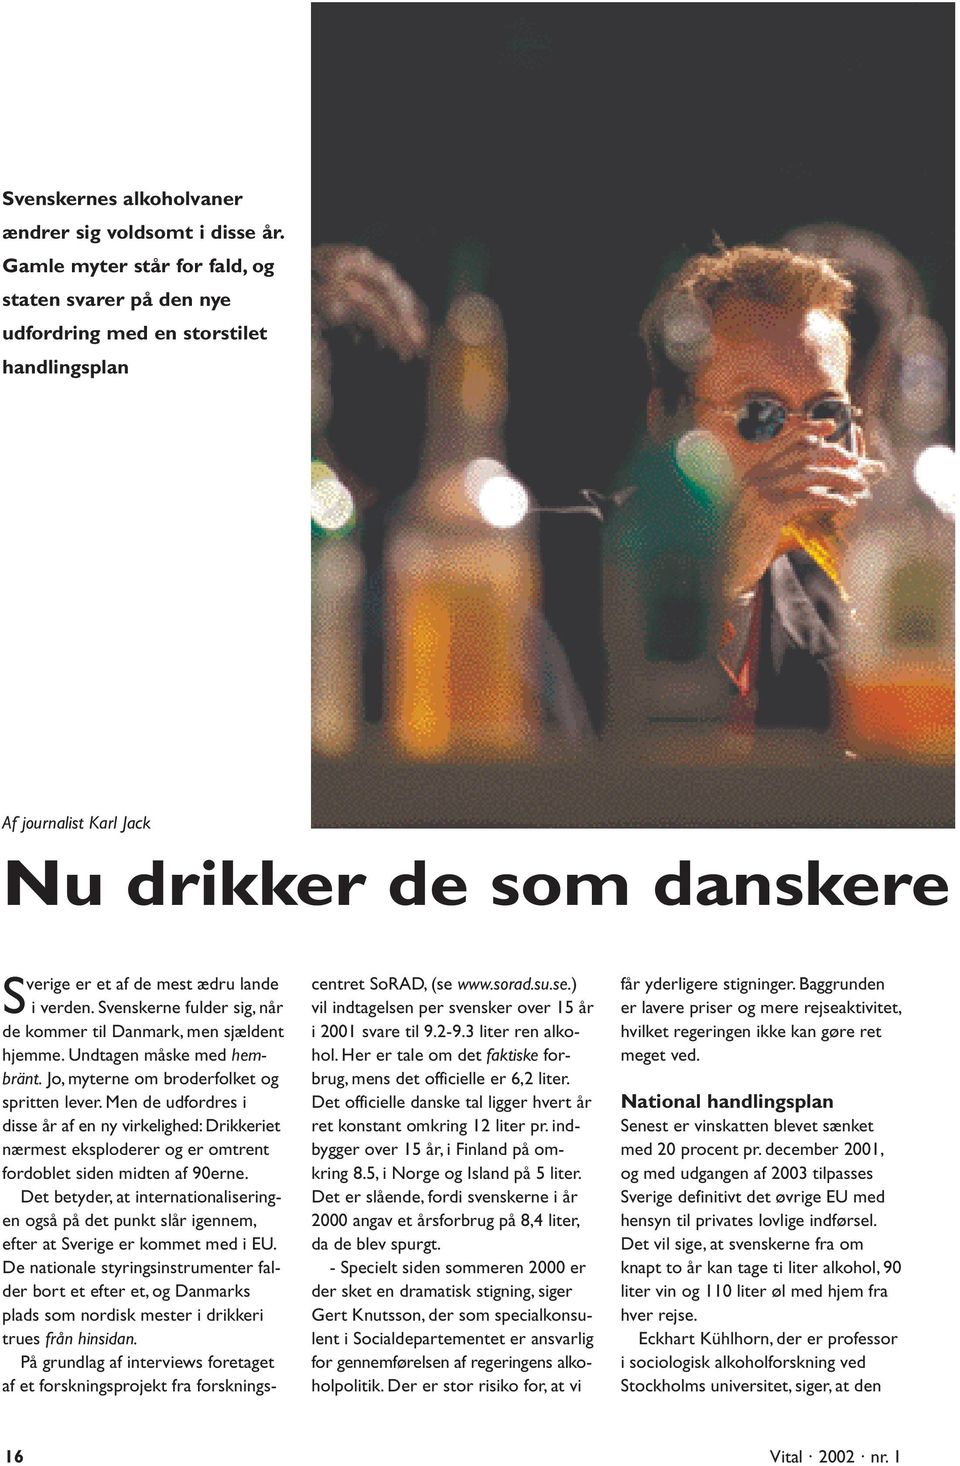 www.sorad.su.se.) vil indtagelsen per svensker over 15 år i 2001 svare til 9.2-9.3 liter ren alkohol. Her er tale om det faktiske forbrug, mens det officielle er 6,2 liter.